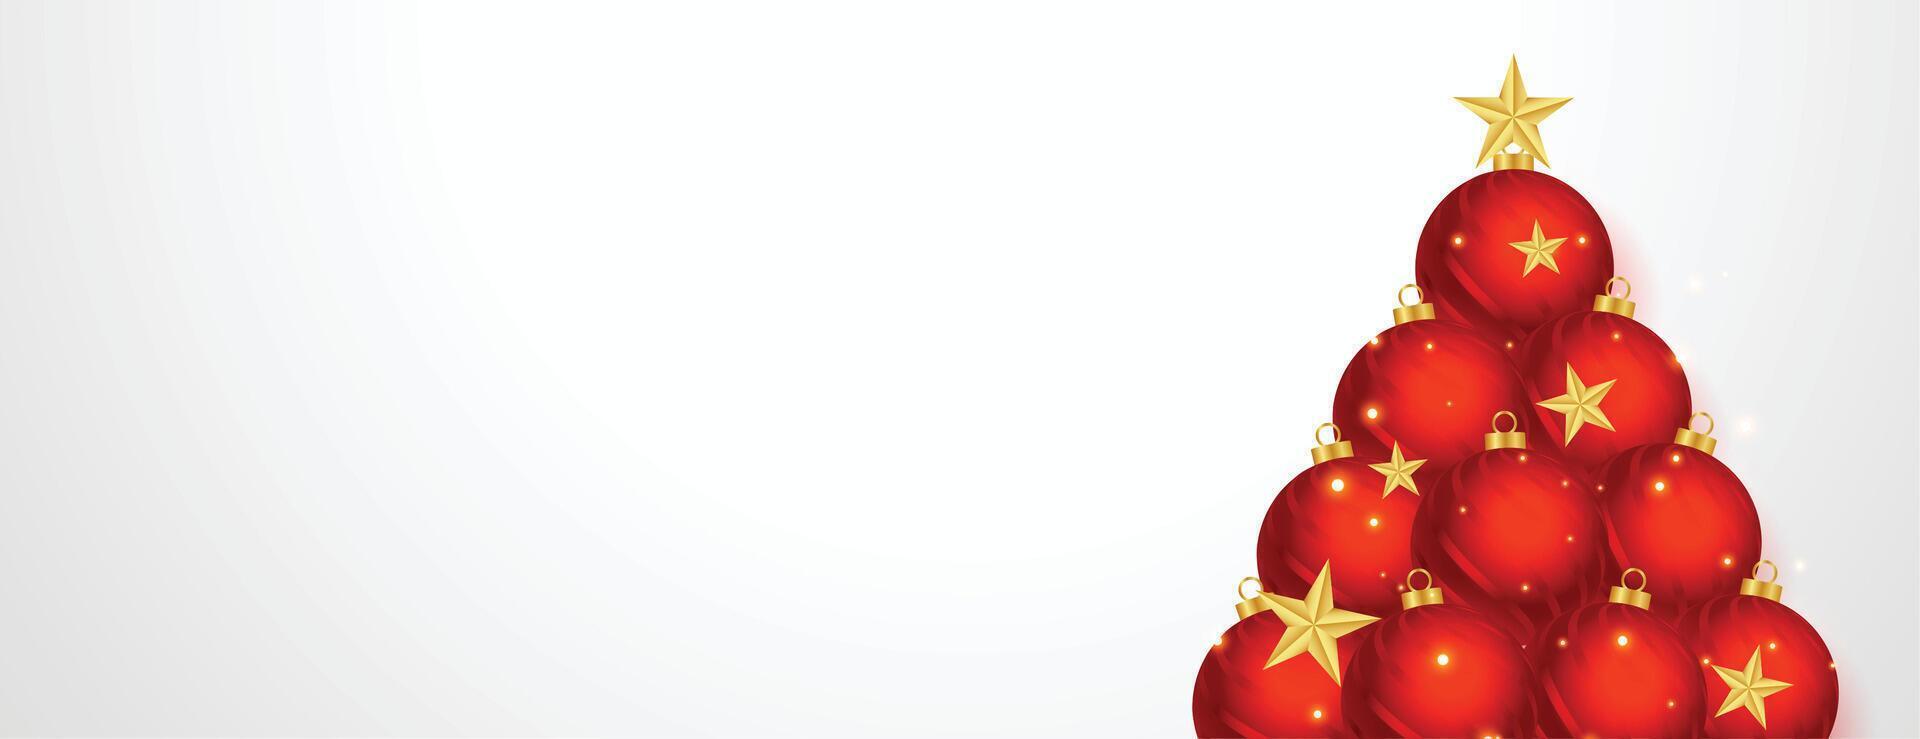 criativo Natal árvore fez com natal bola e estrelas vetor